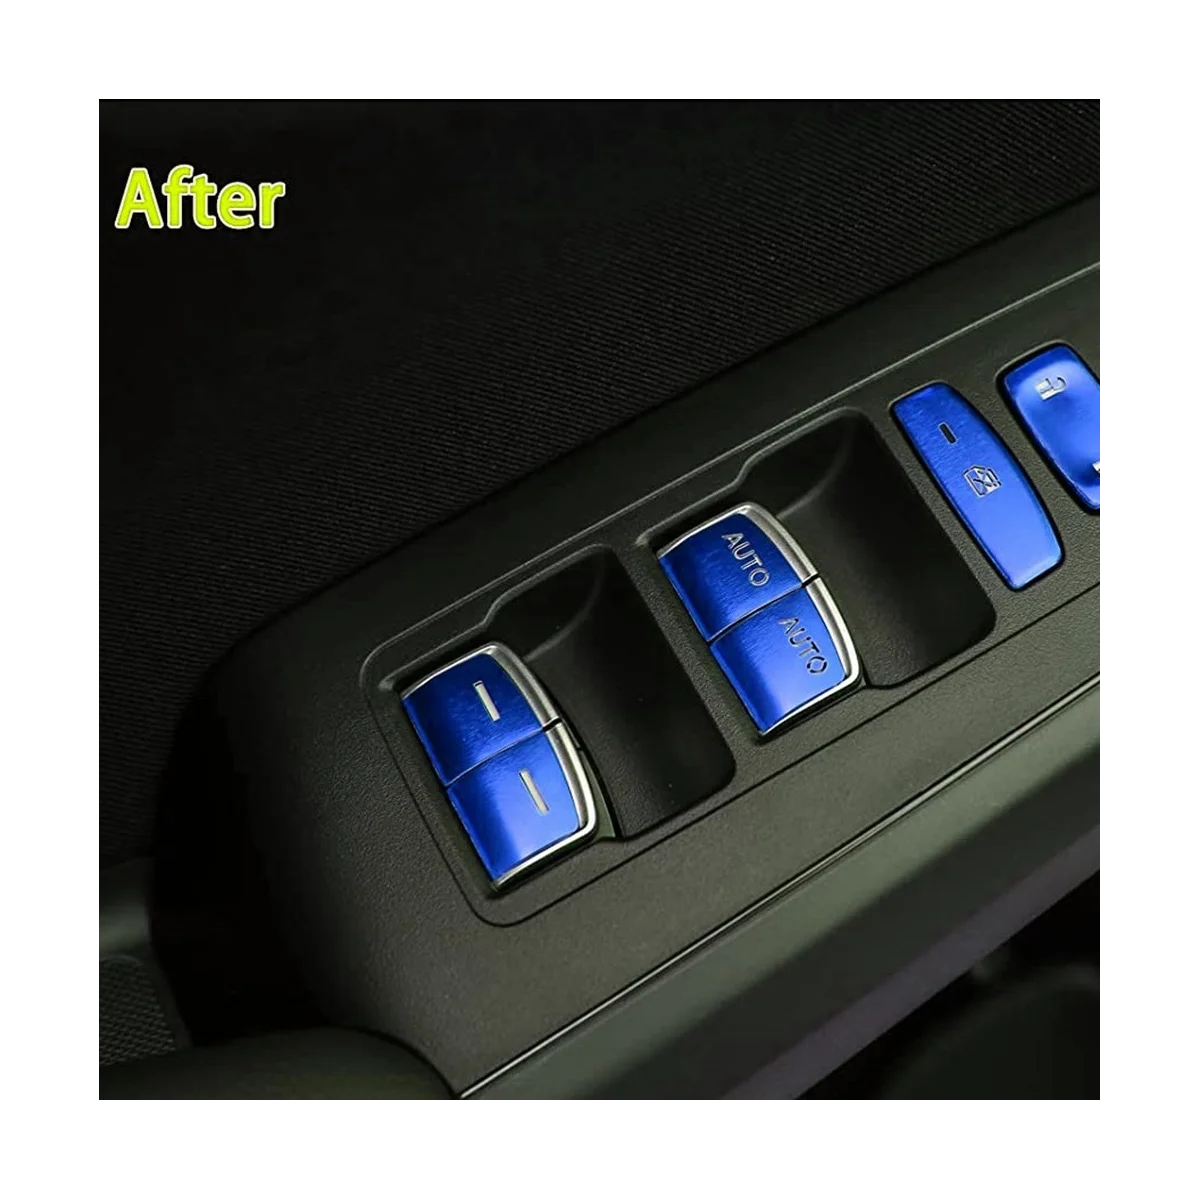 13Pcs Modré Okno Gl Výťah Prepnúť Tlačidlo Krytu Výbava Nálepka pre Honda Civic 11. Gen 2022